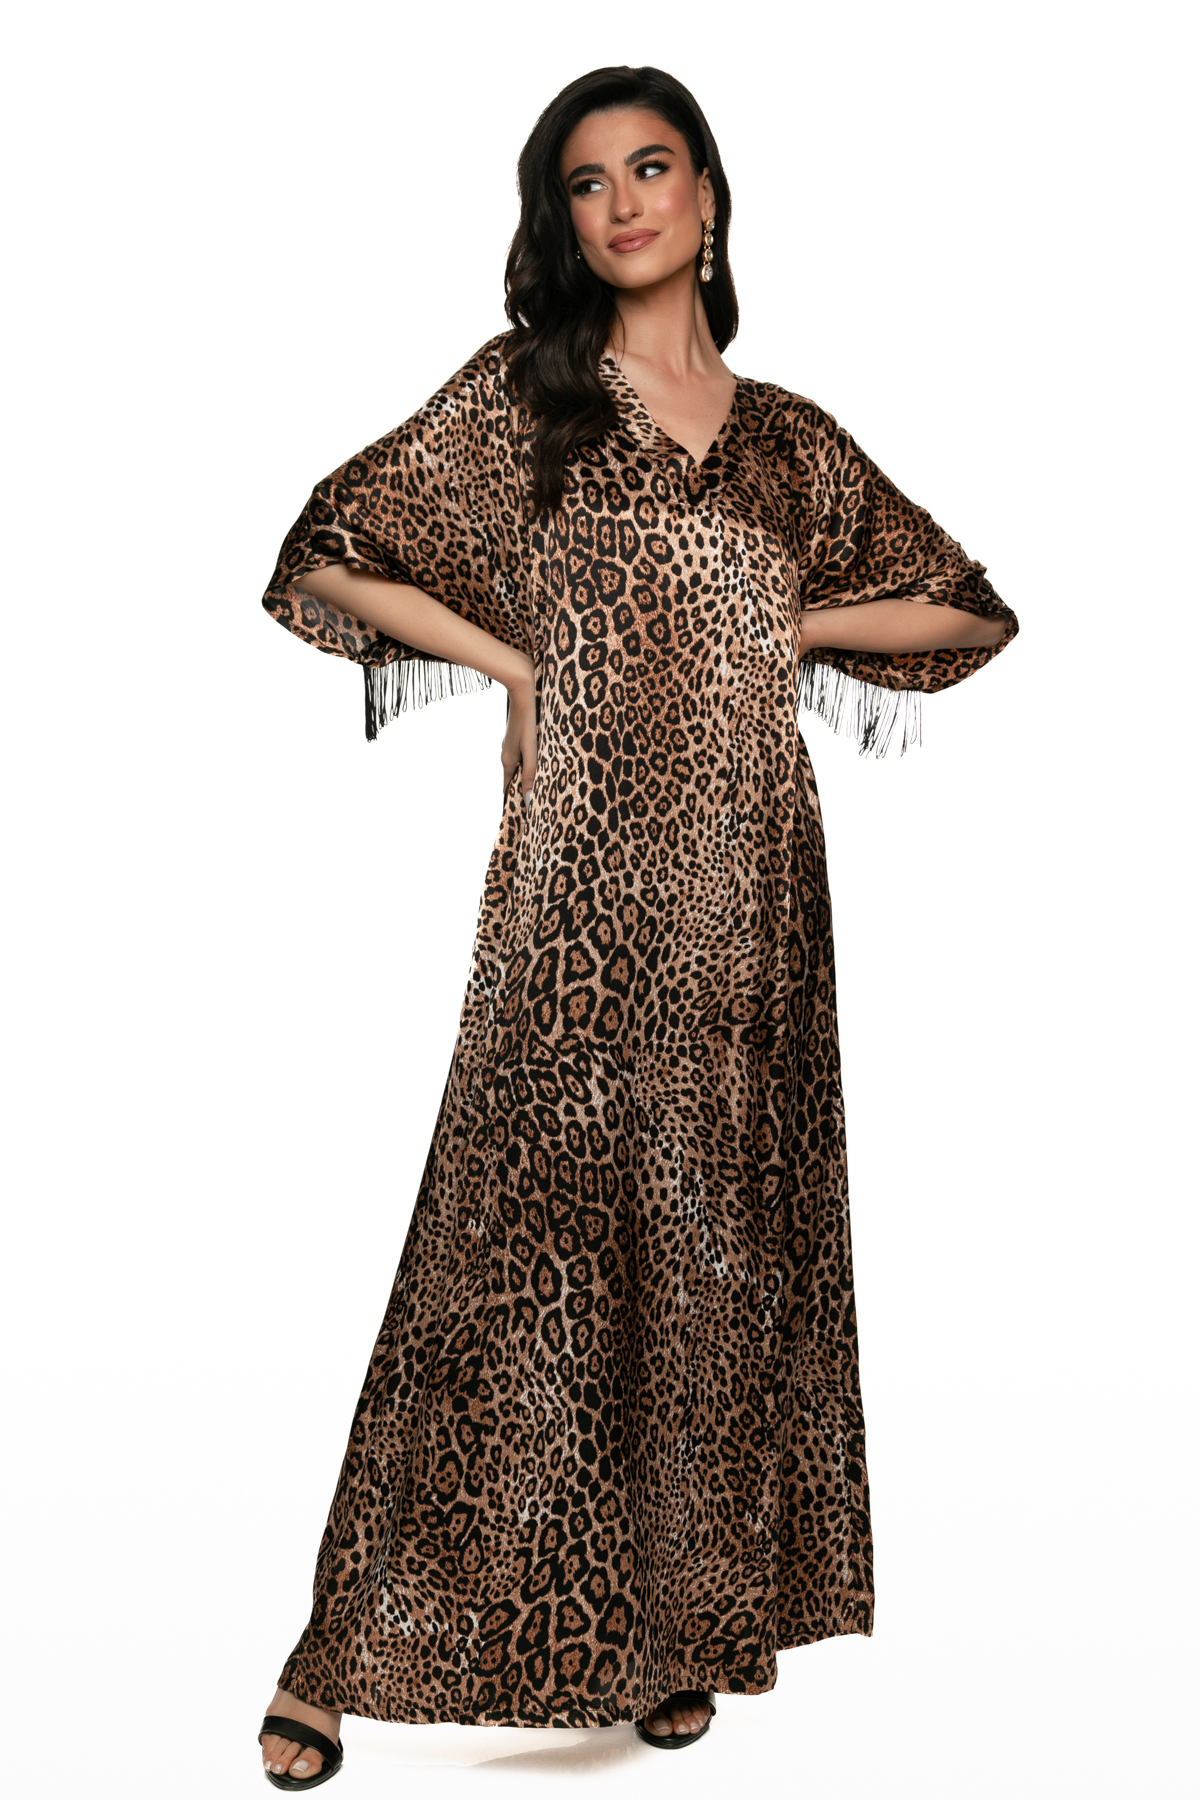 Σατέν Leopard Φόρεμα